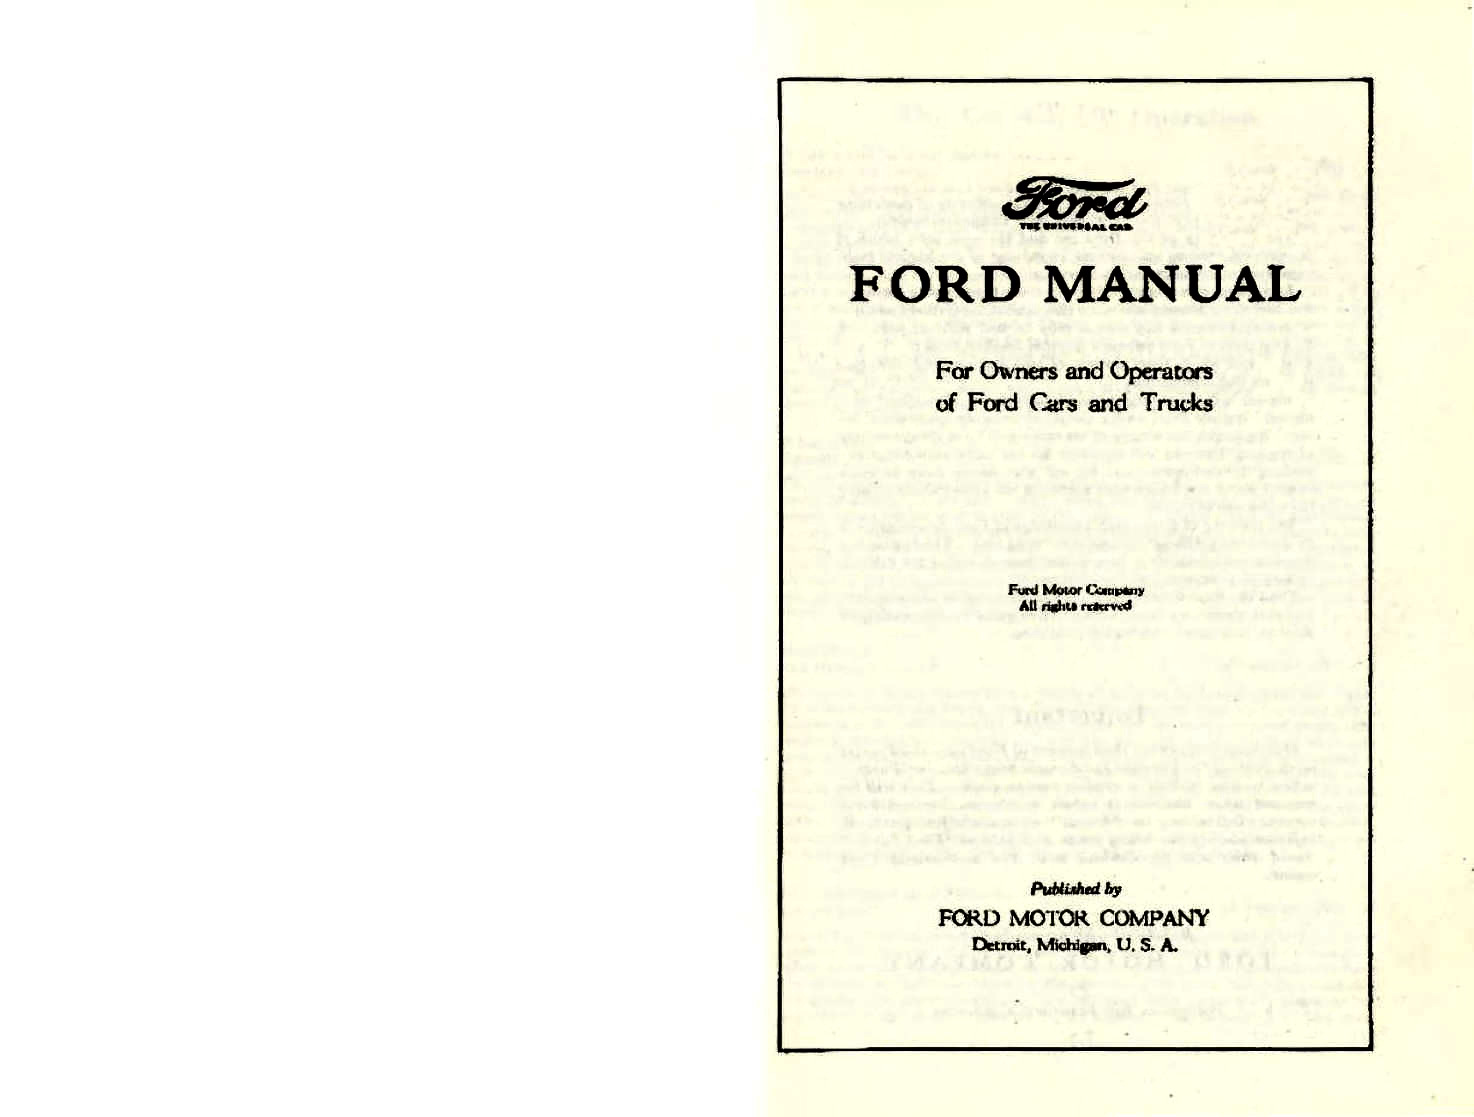 n_1924 Ford Owners Manual-00a-01.jpg